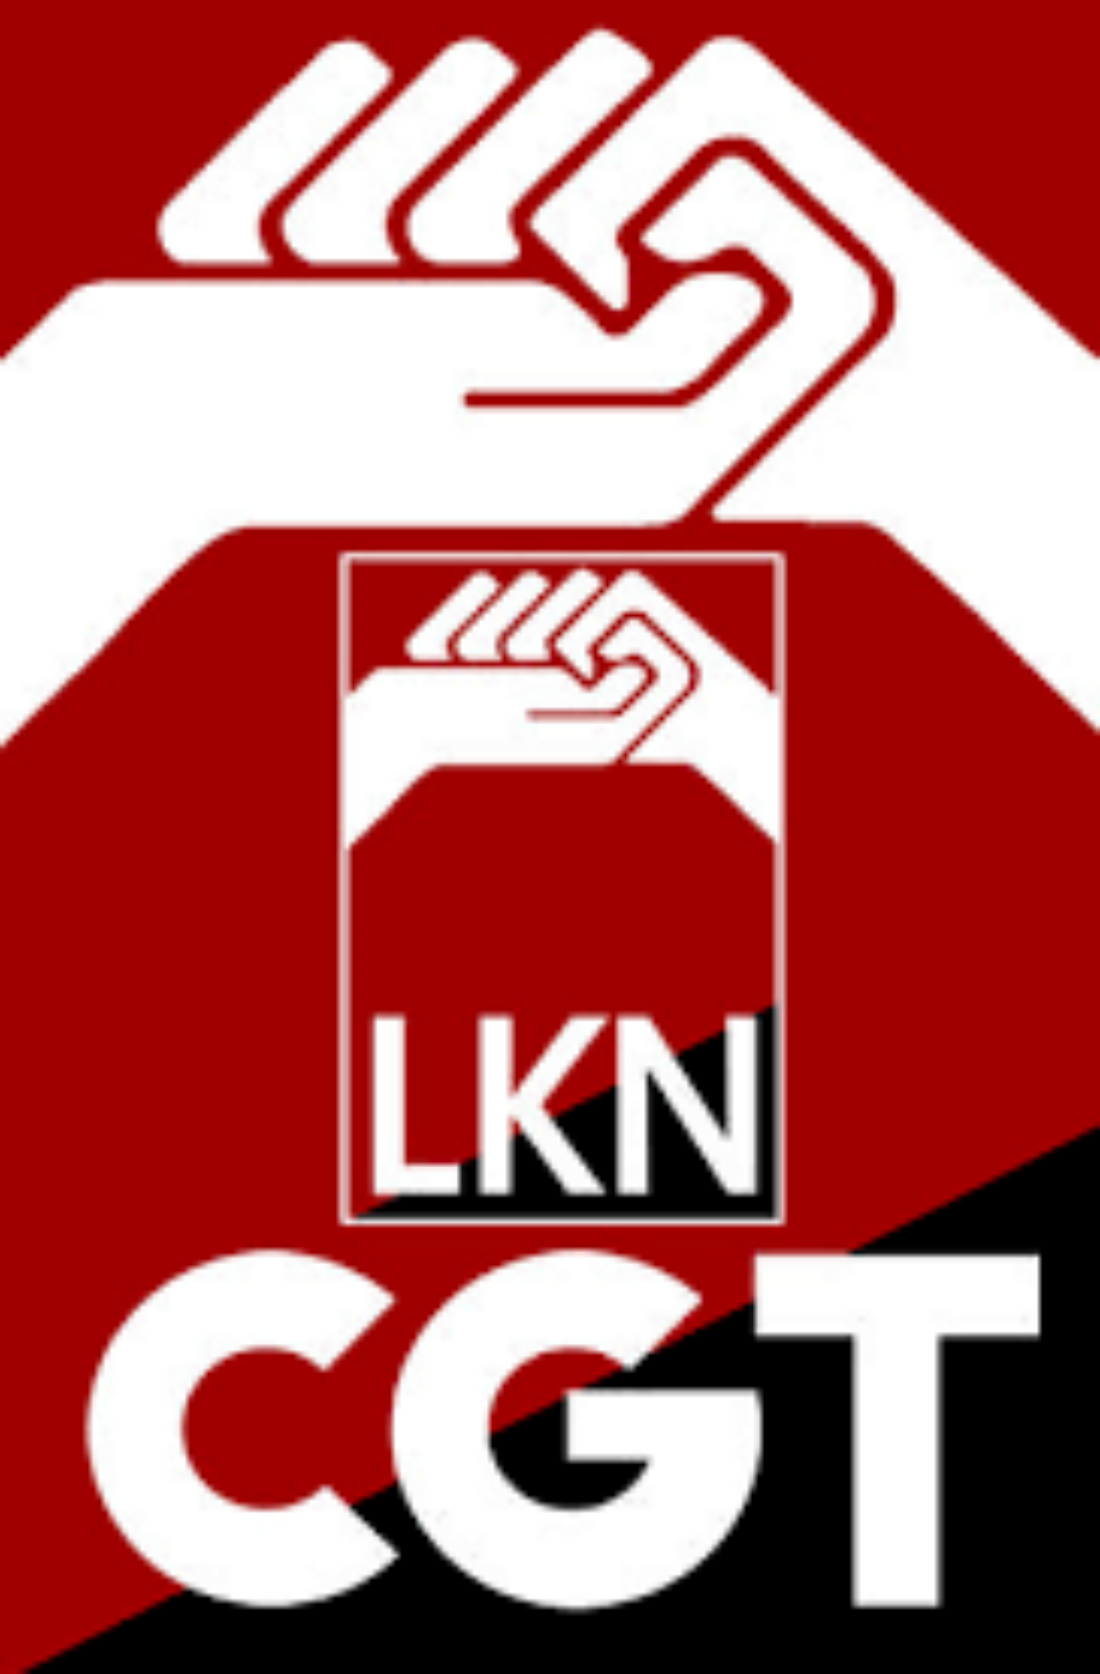 CGT apoya la huelga del próximo 19 de octubre y hace un llamamiento a una movilización masiva por el Convenio de Oficinas y Despachos de Navarra